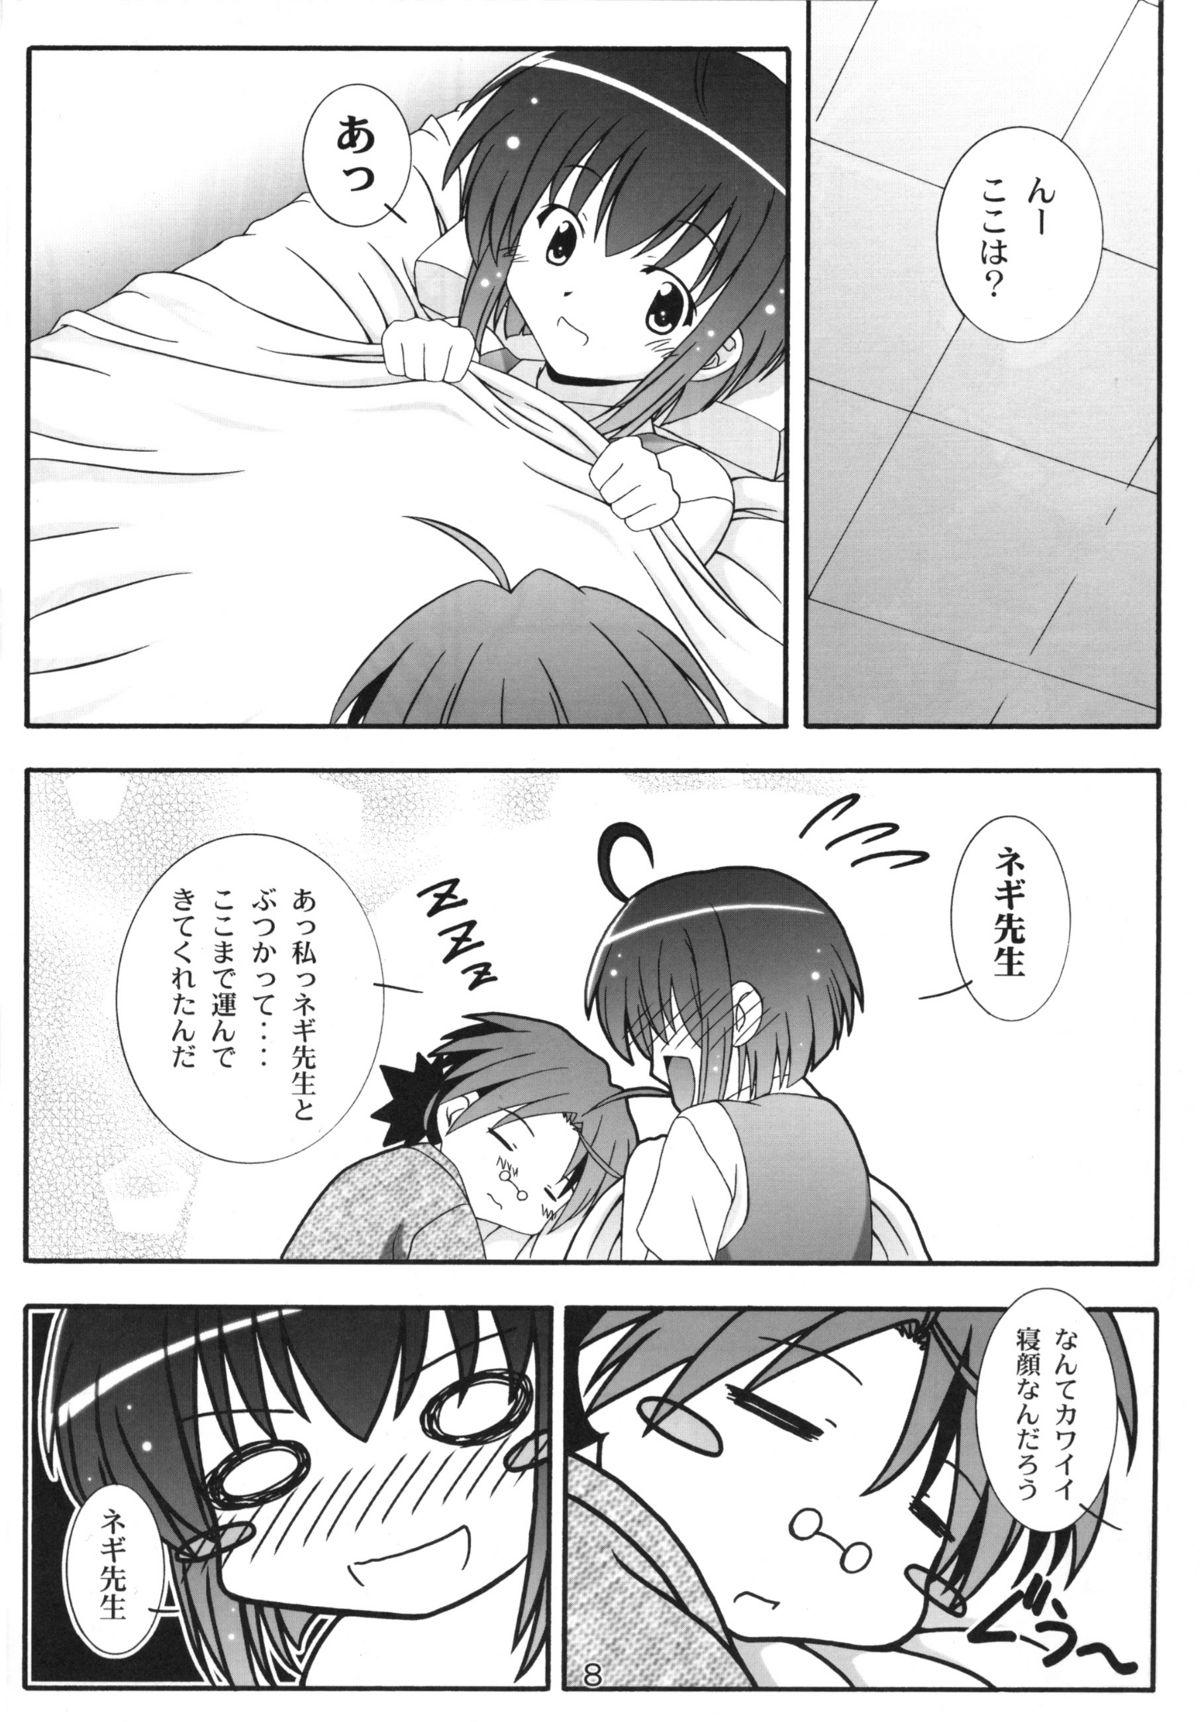 Toilet Nodoca no Dream | Nodoca's Dream - Mahou sensei negima Daring - Page 7